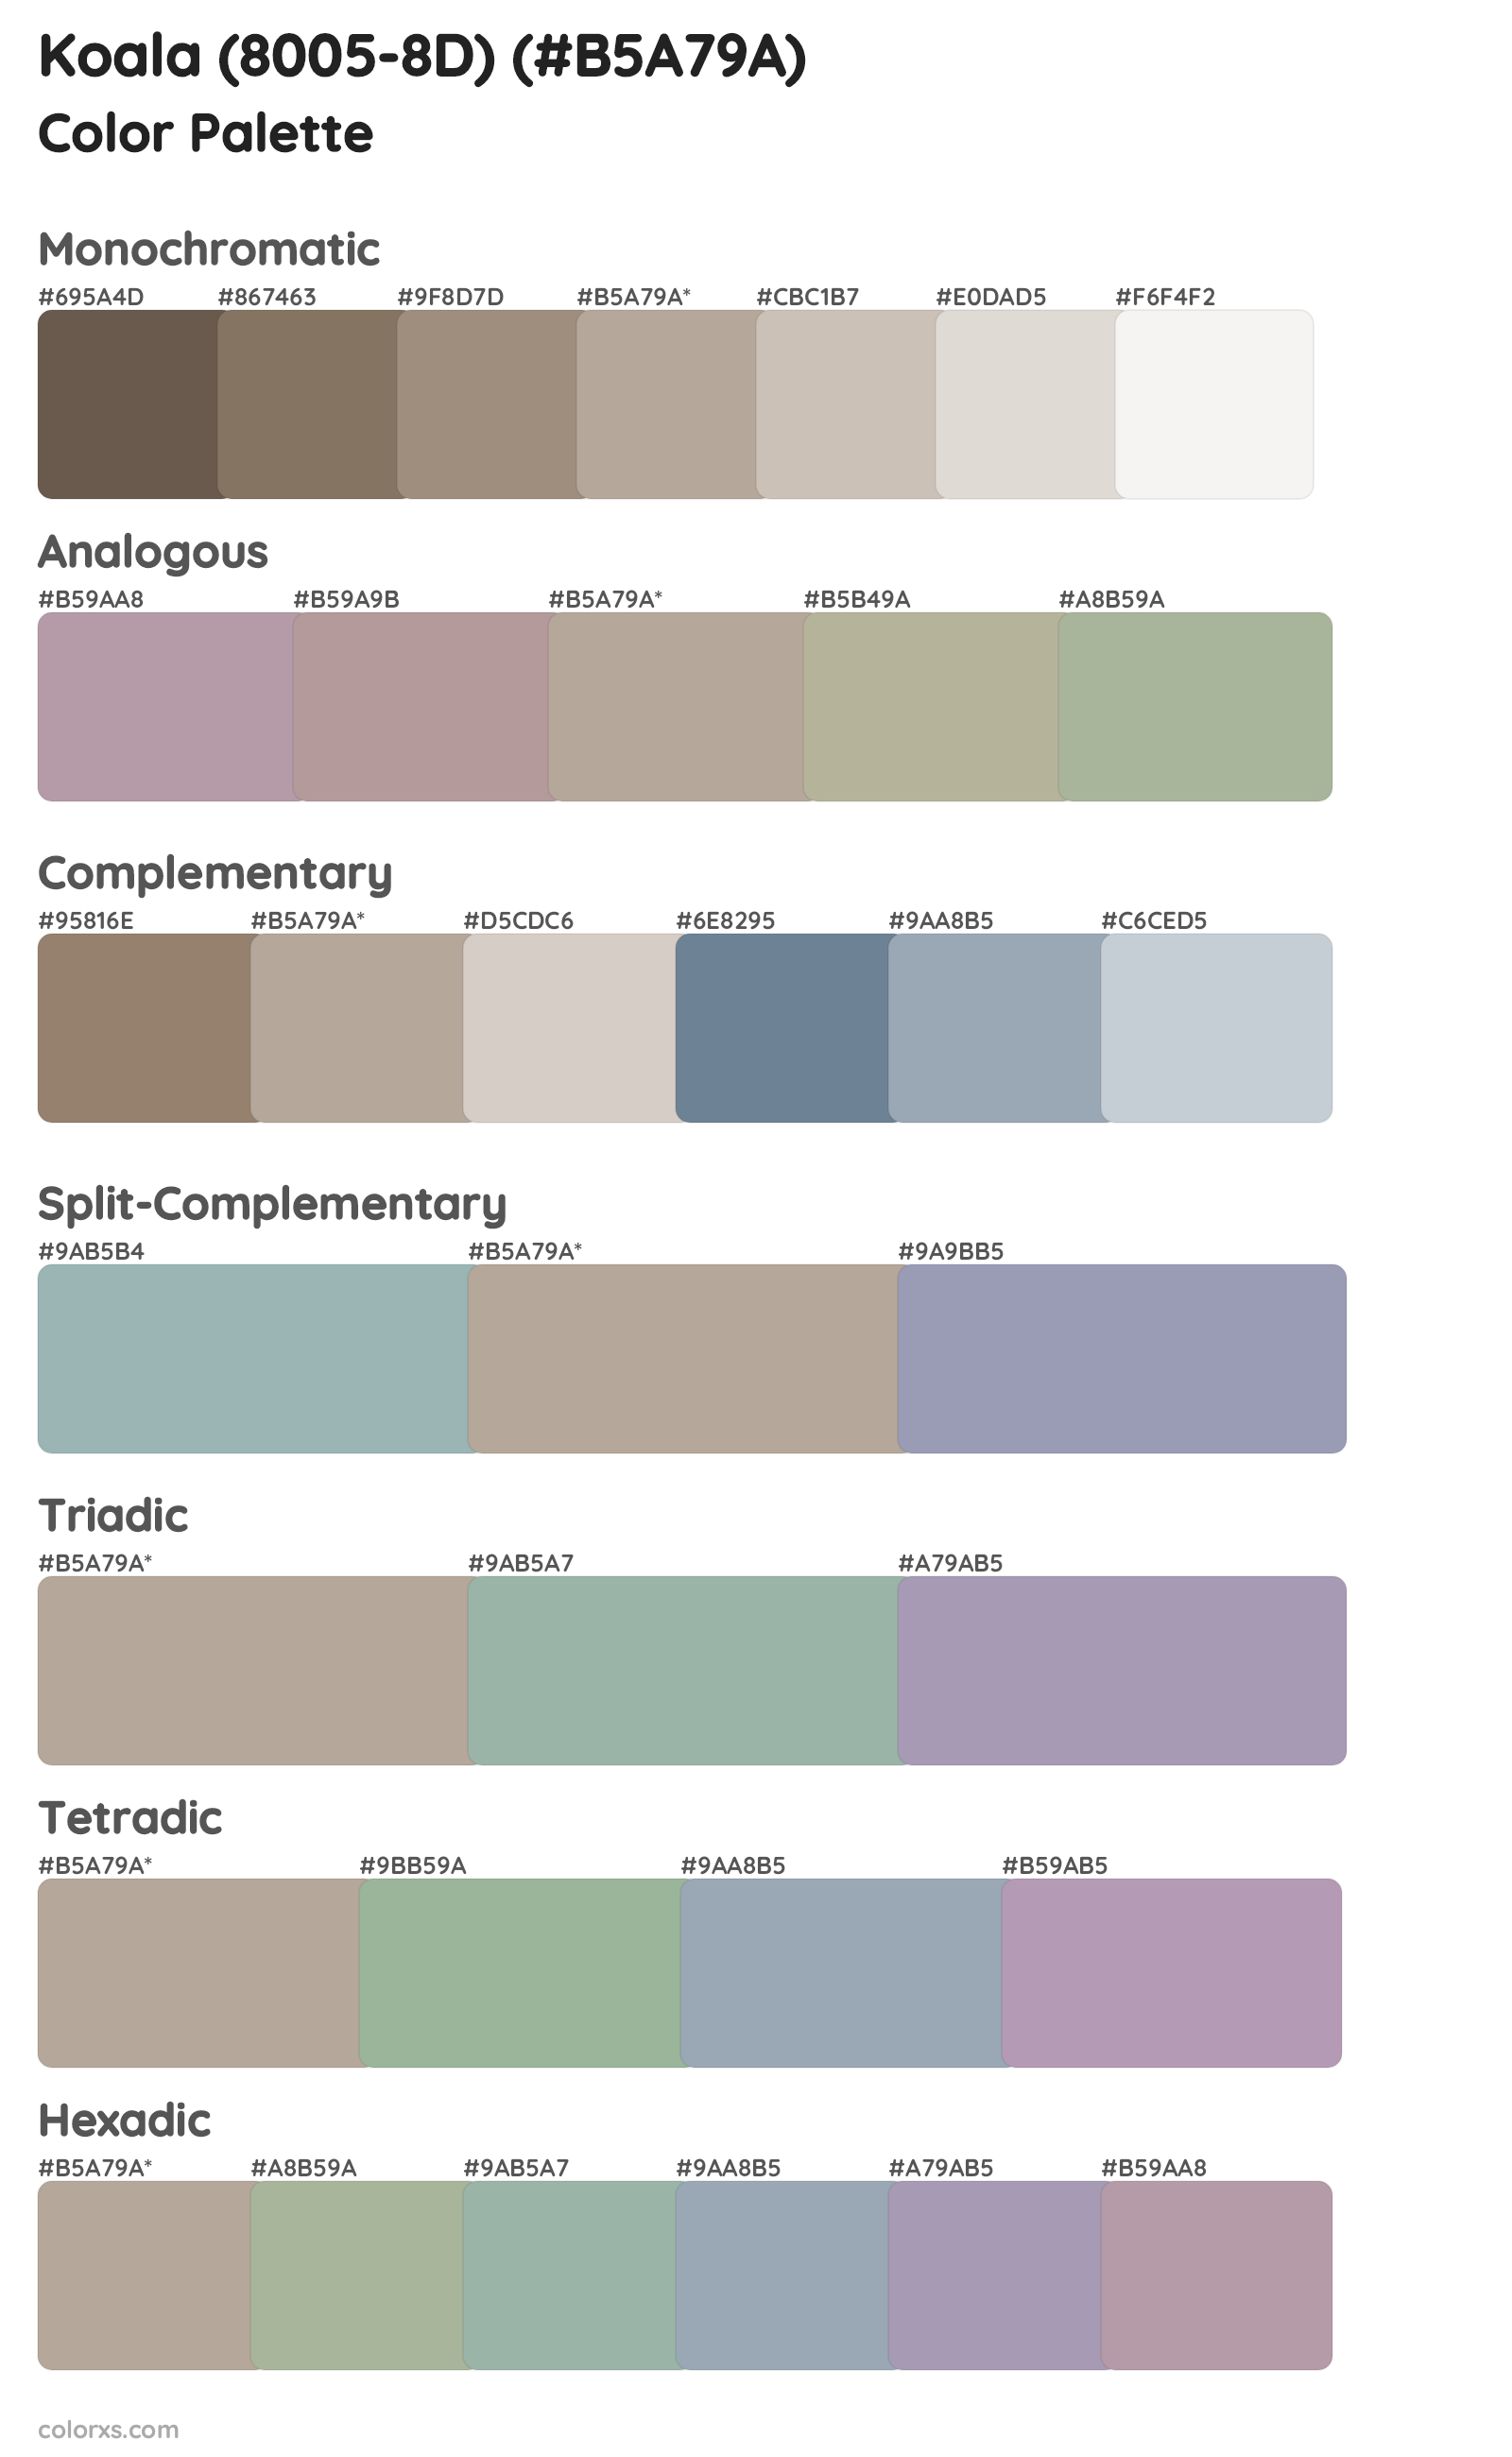 Koala (8005-8D) Color Scheme Palettes